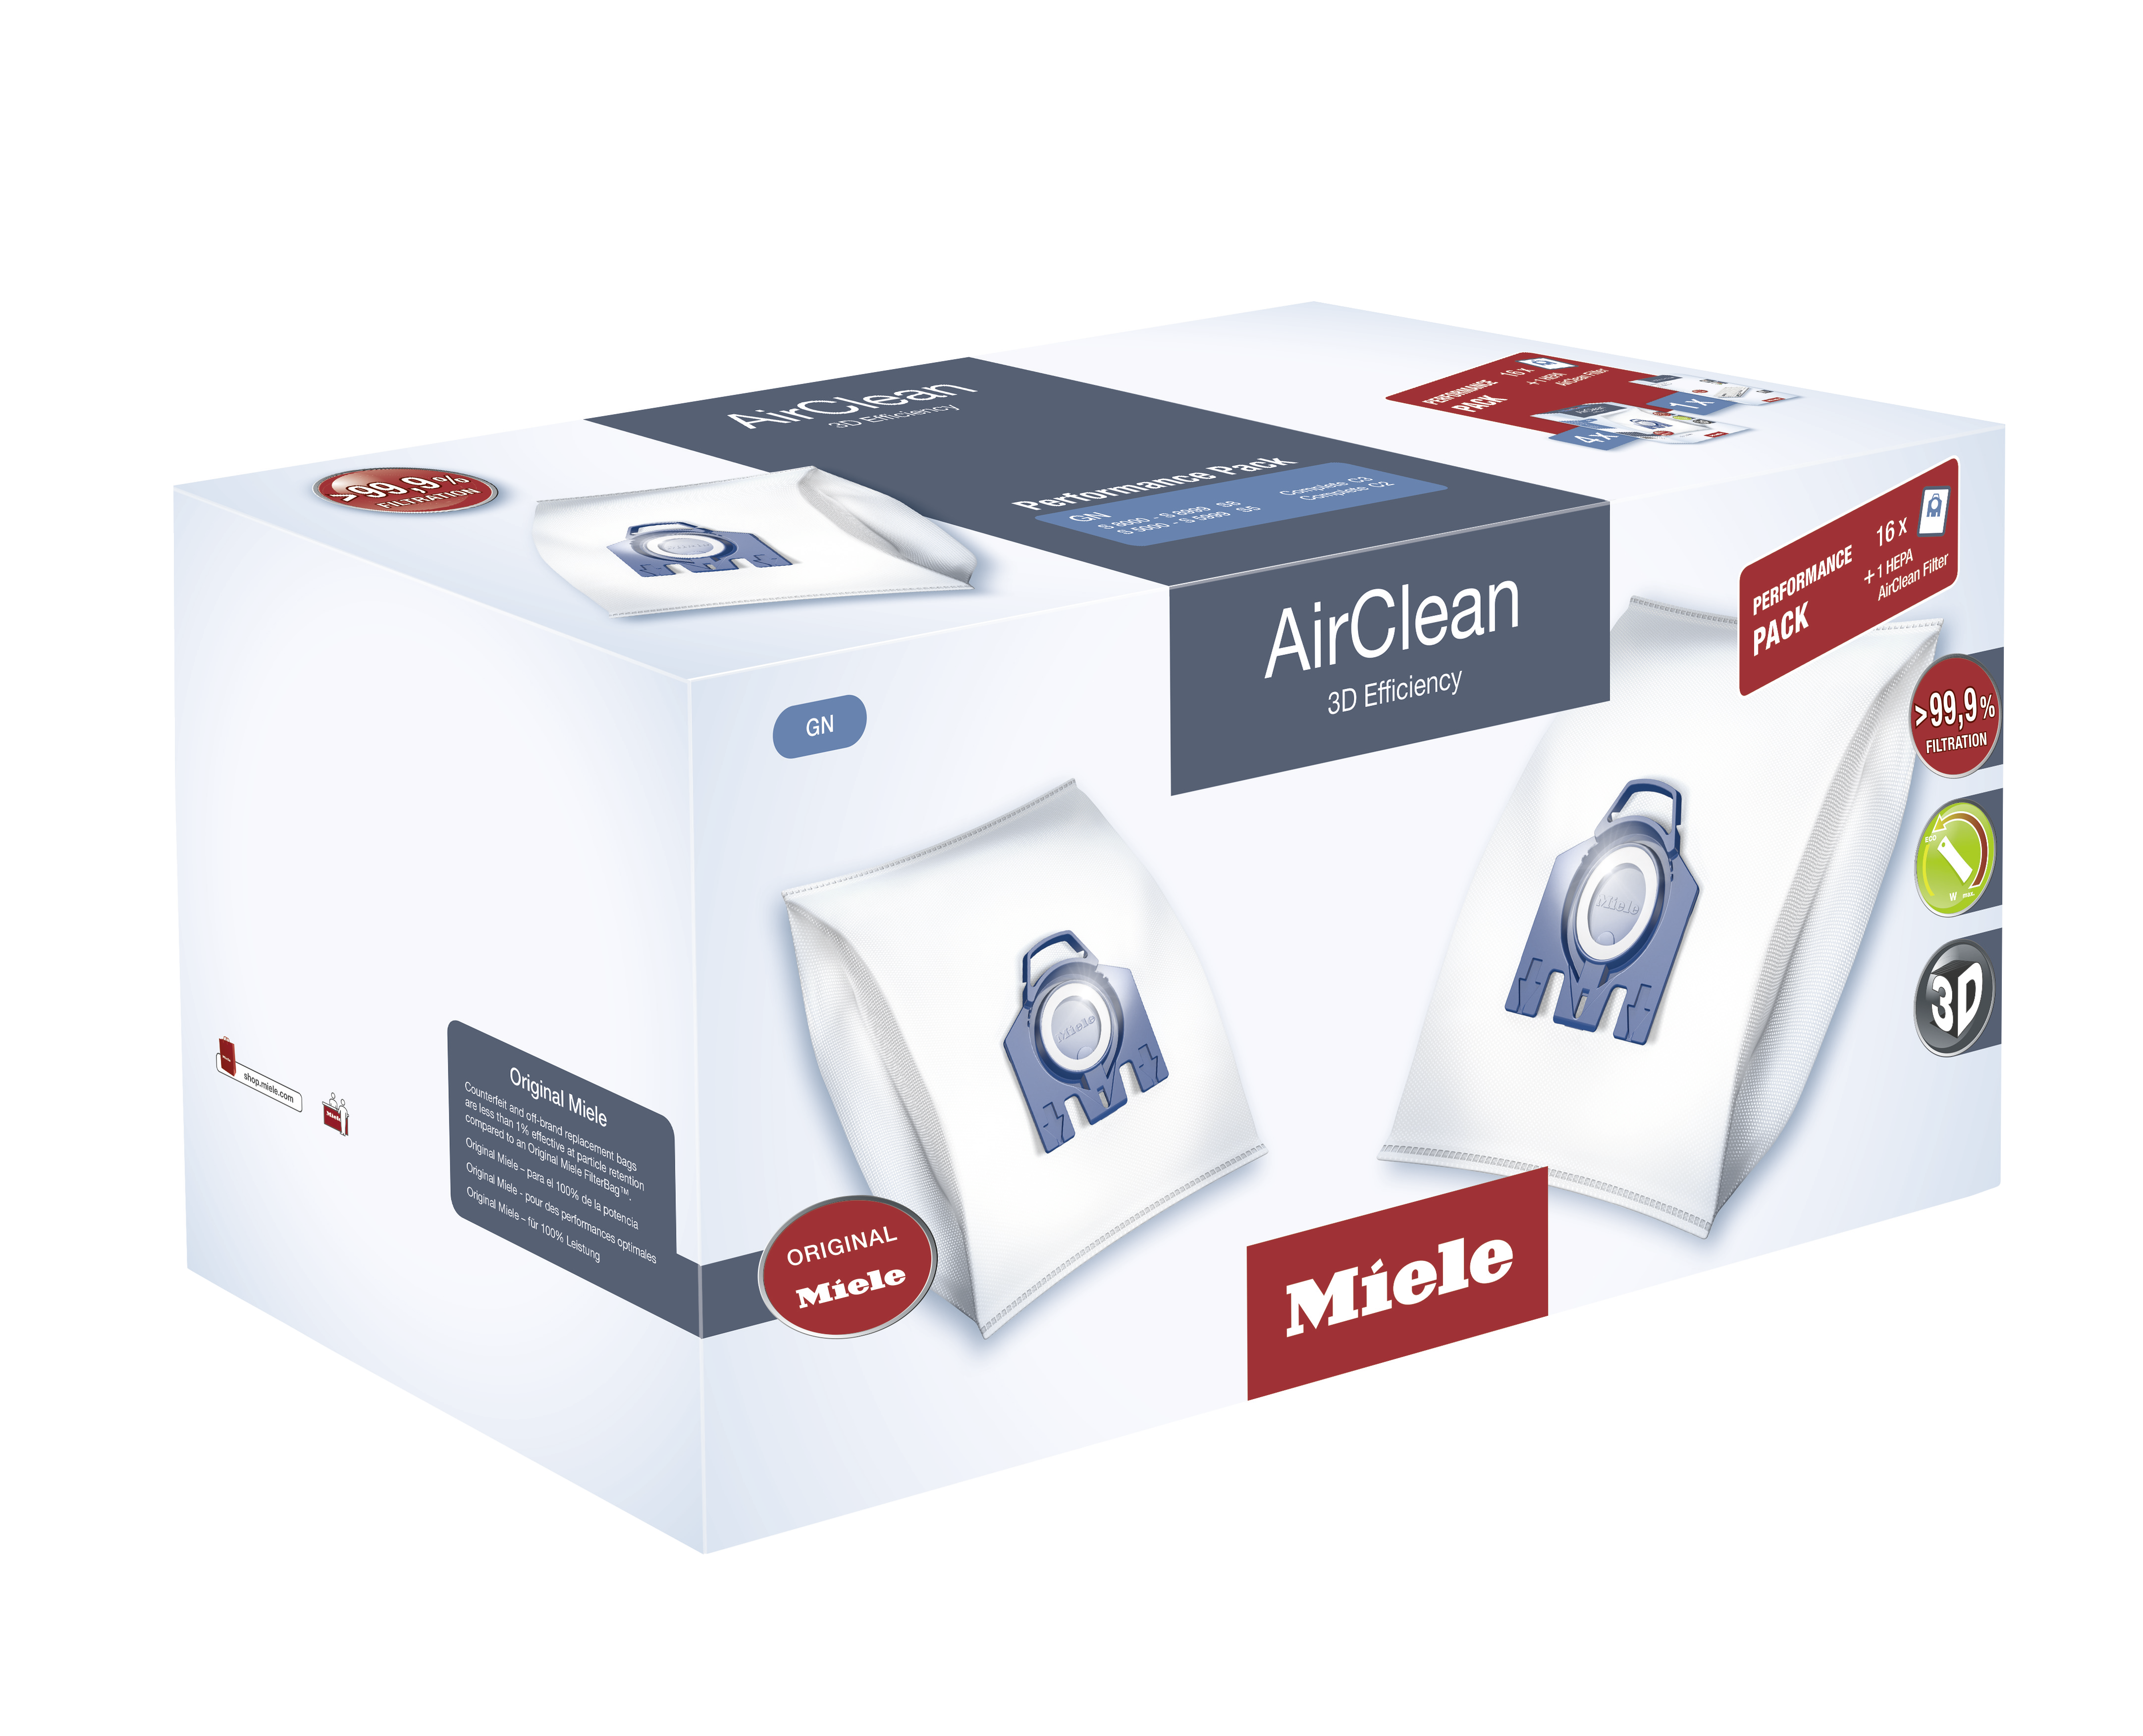 AirClean 3D Efficiency U Dustbags 2-4x2 Miele Lotus White 